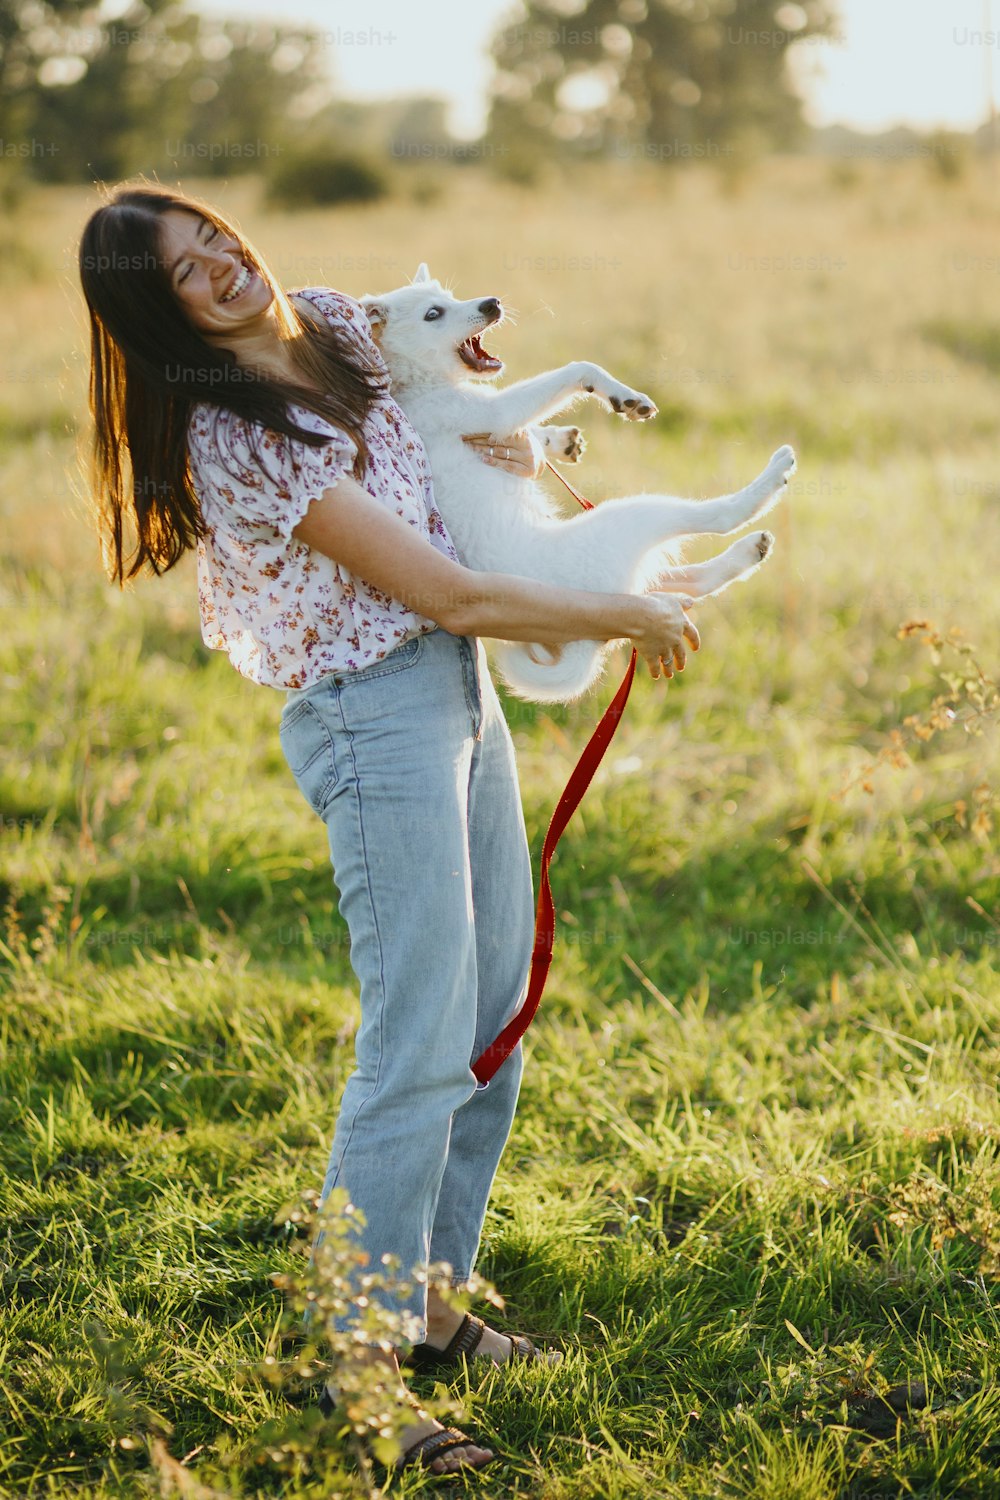 Menina segurando brincalhão adorável filhote fofo, momento hilário. Brincando com cachorrinho. Mulher jovem feliz segurando filhote de cachorro branco engraçado na luz quente do pôr do sol no prado de verão.